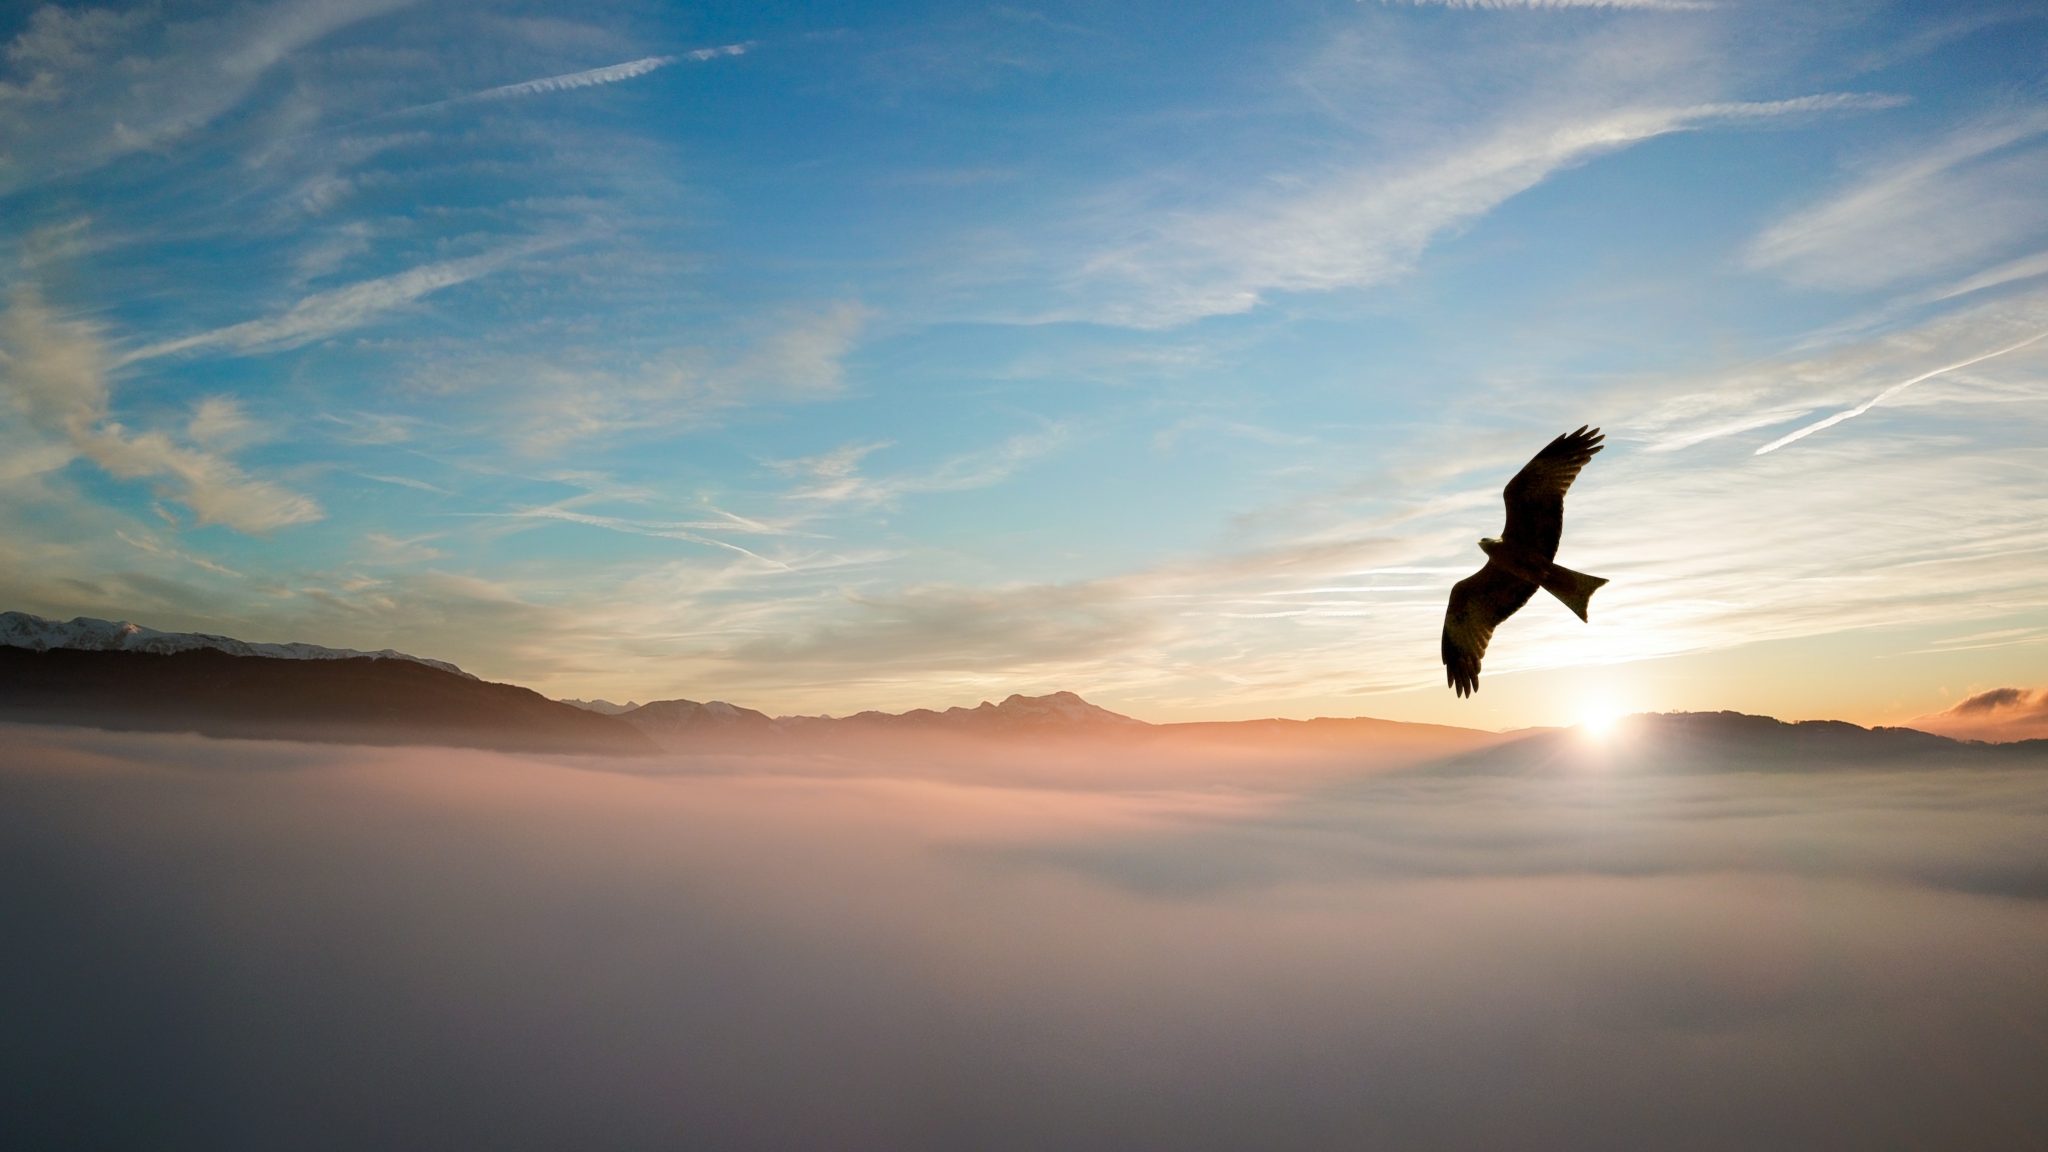 Klaar om te zweven - adelaar die over de bergen vliegt door de wolken met de ondergaande zon op de achtergrond.